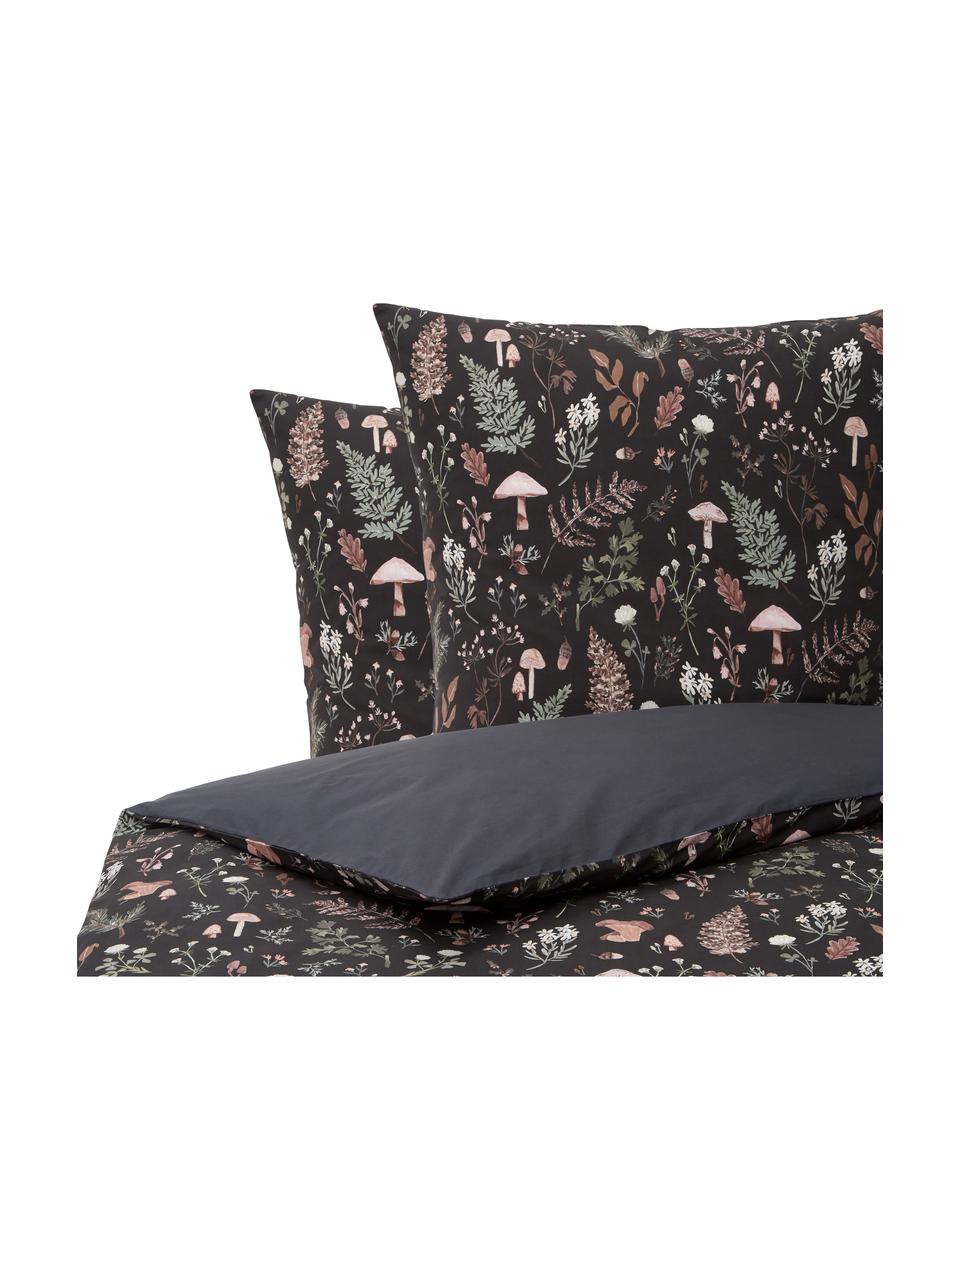 Perkálová posteľná bielizeň z organickej bavlny Mushroom od Candice Gray, Antracitová, viacfarebná, 200 x 200 cm + 2 vankúše 80 x 80 cm